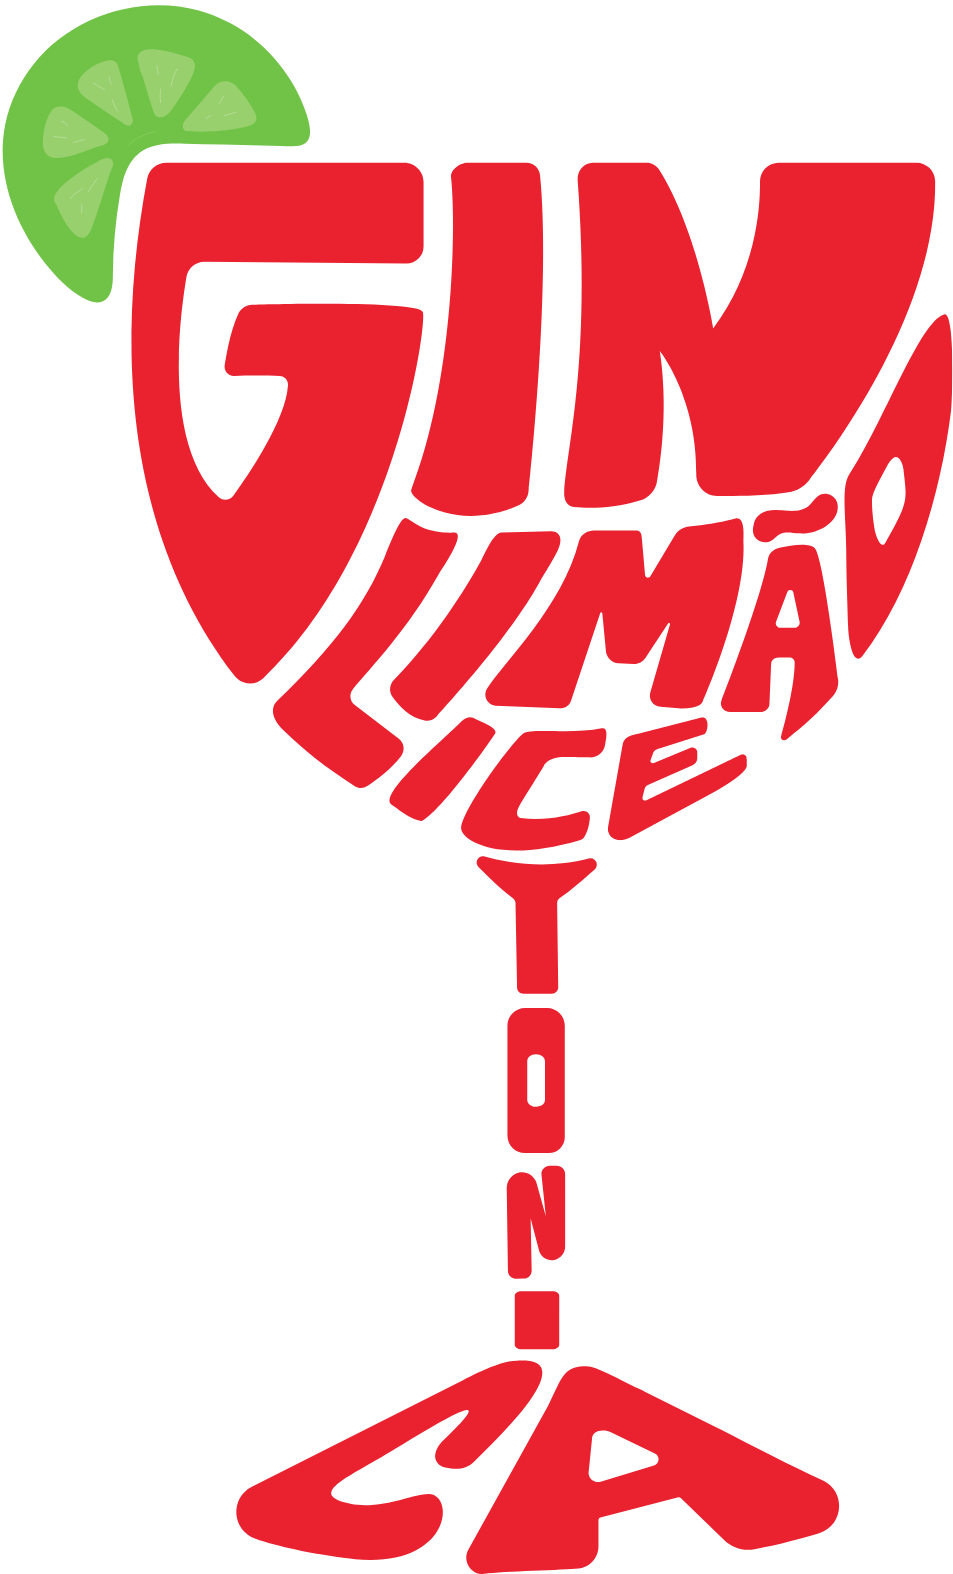 Imagem composta por palavras escritas em vermelho que formam a silhueta de uma taça: Gin Limão Ice Tonica. Em cima há o desenho de um limão.